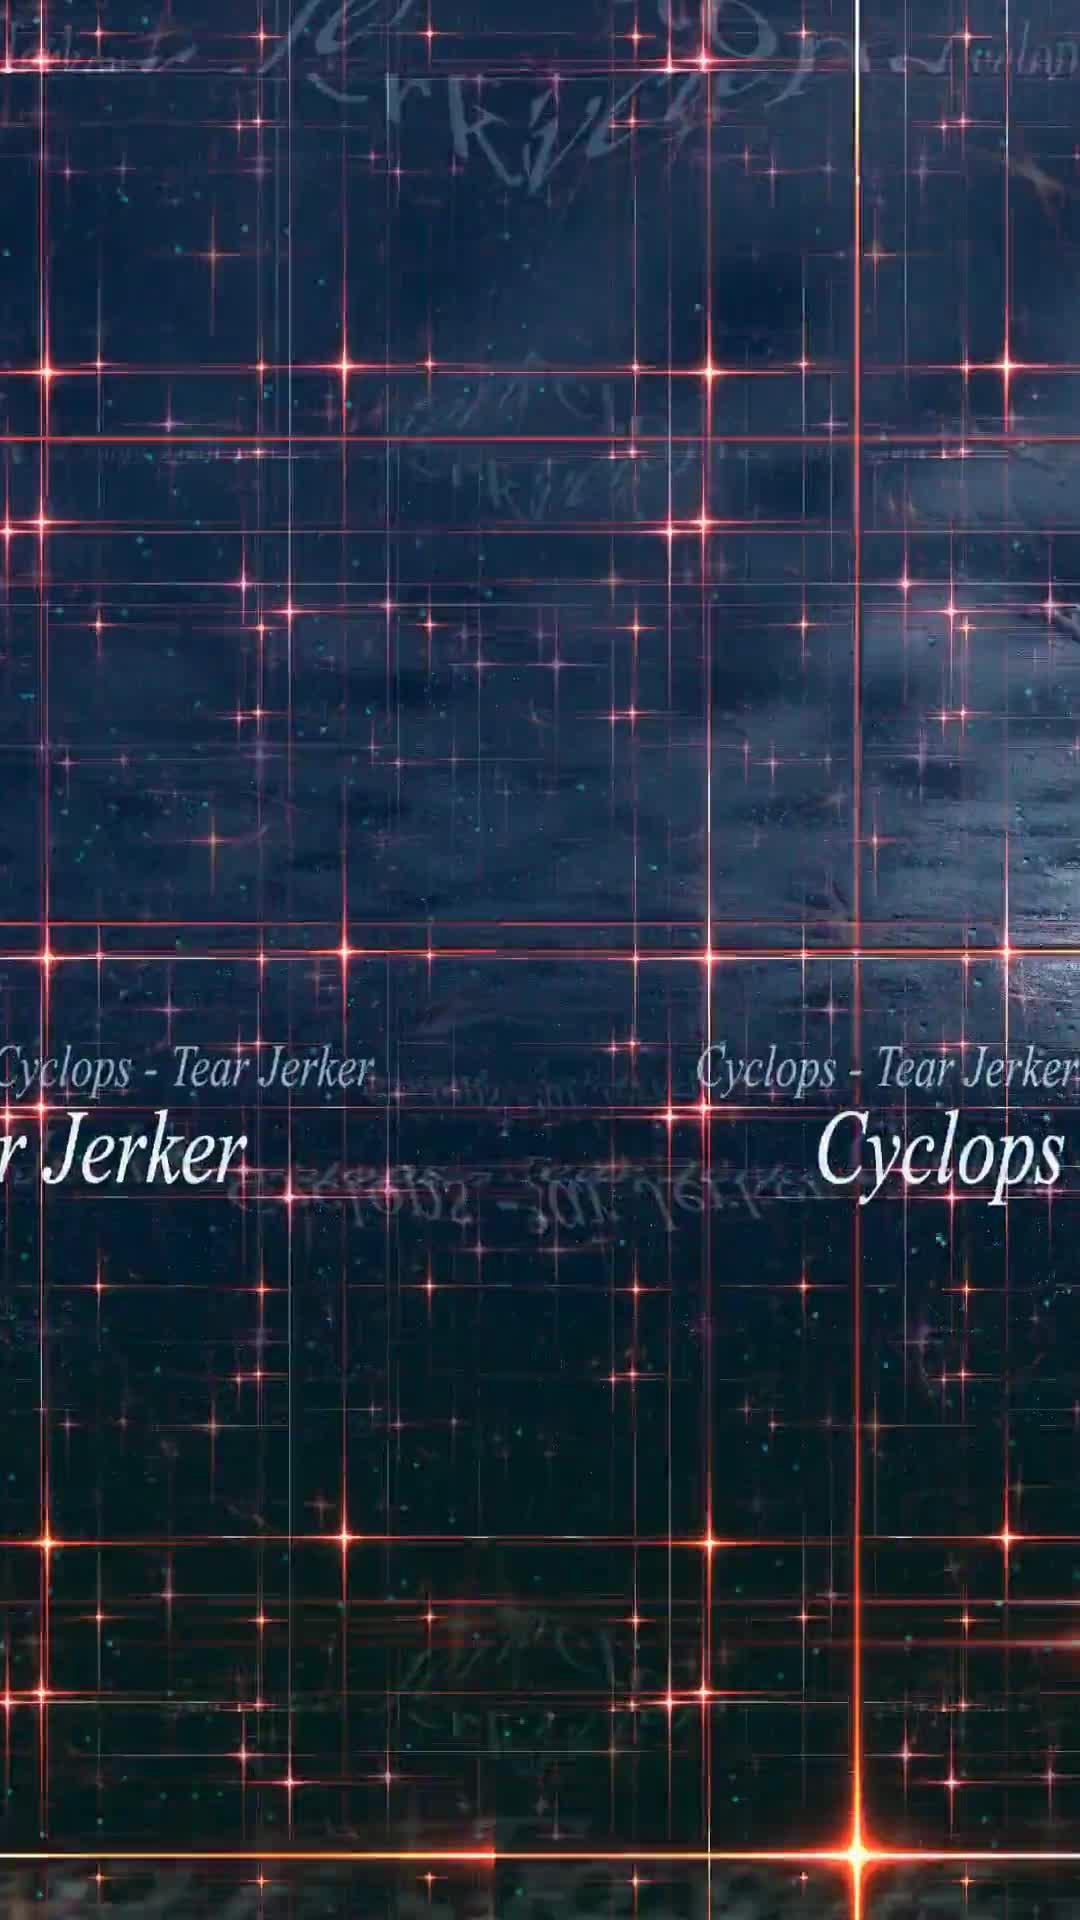 Cyclops - Tear Jerker visualization